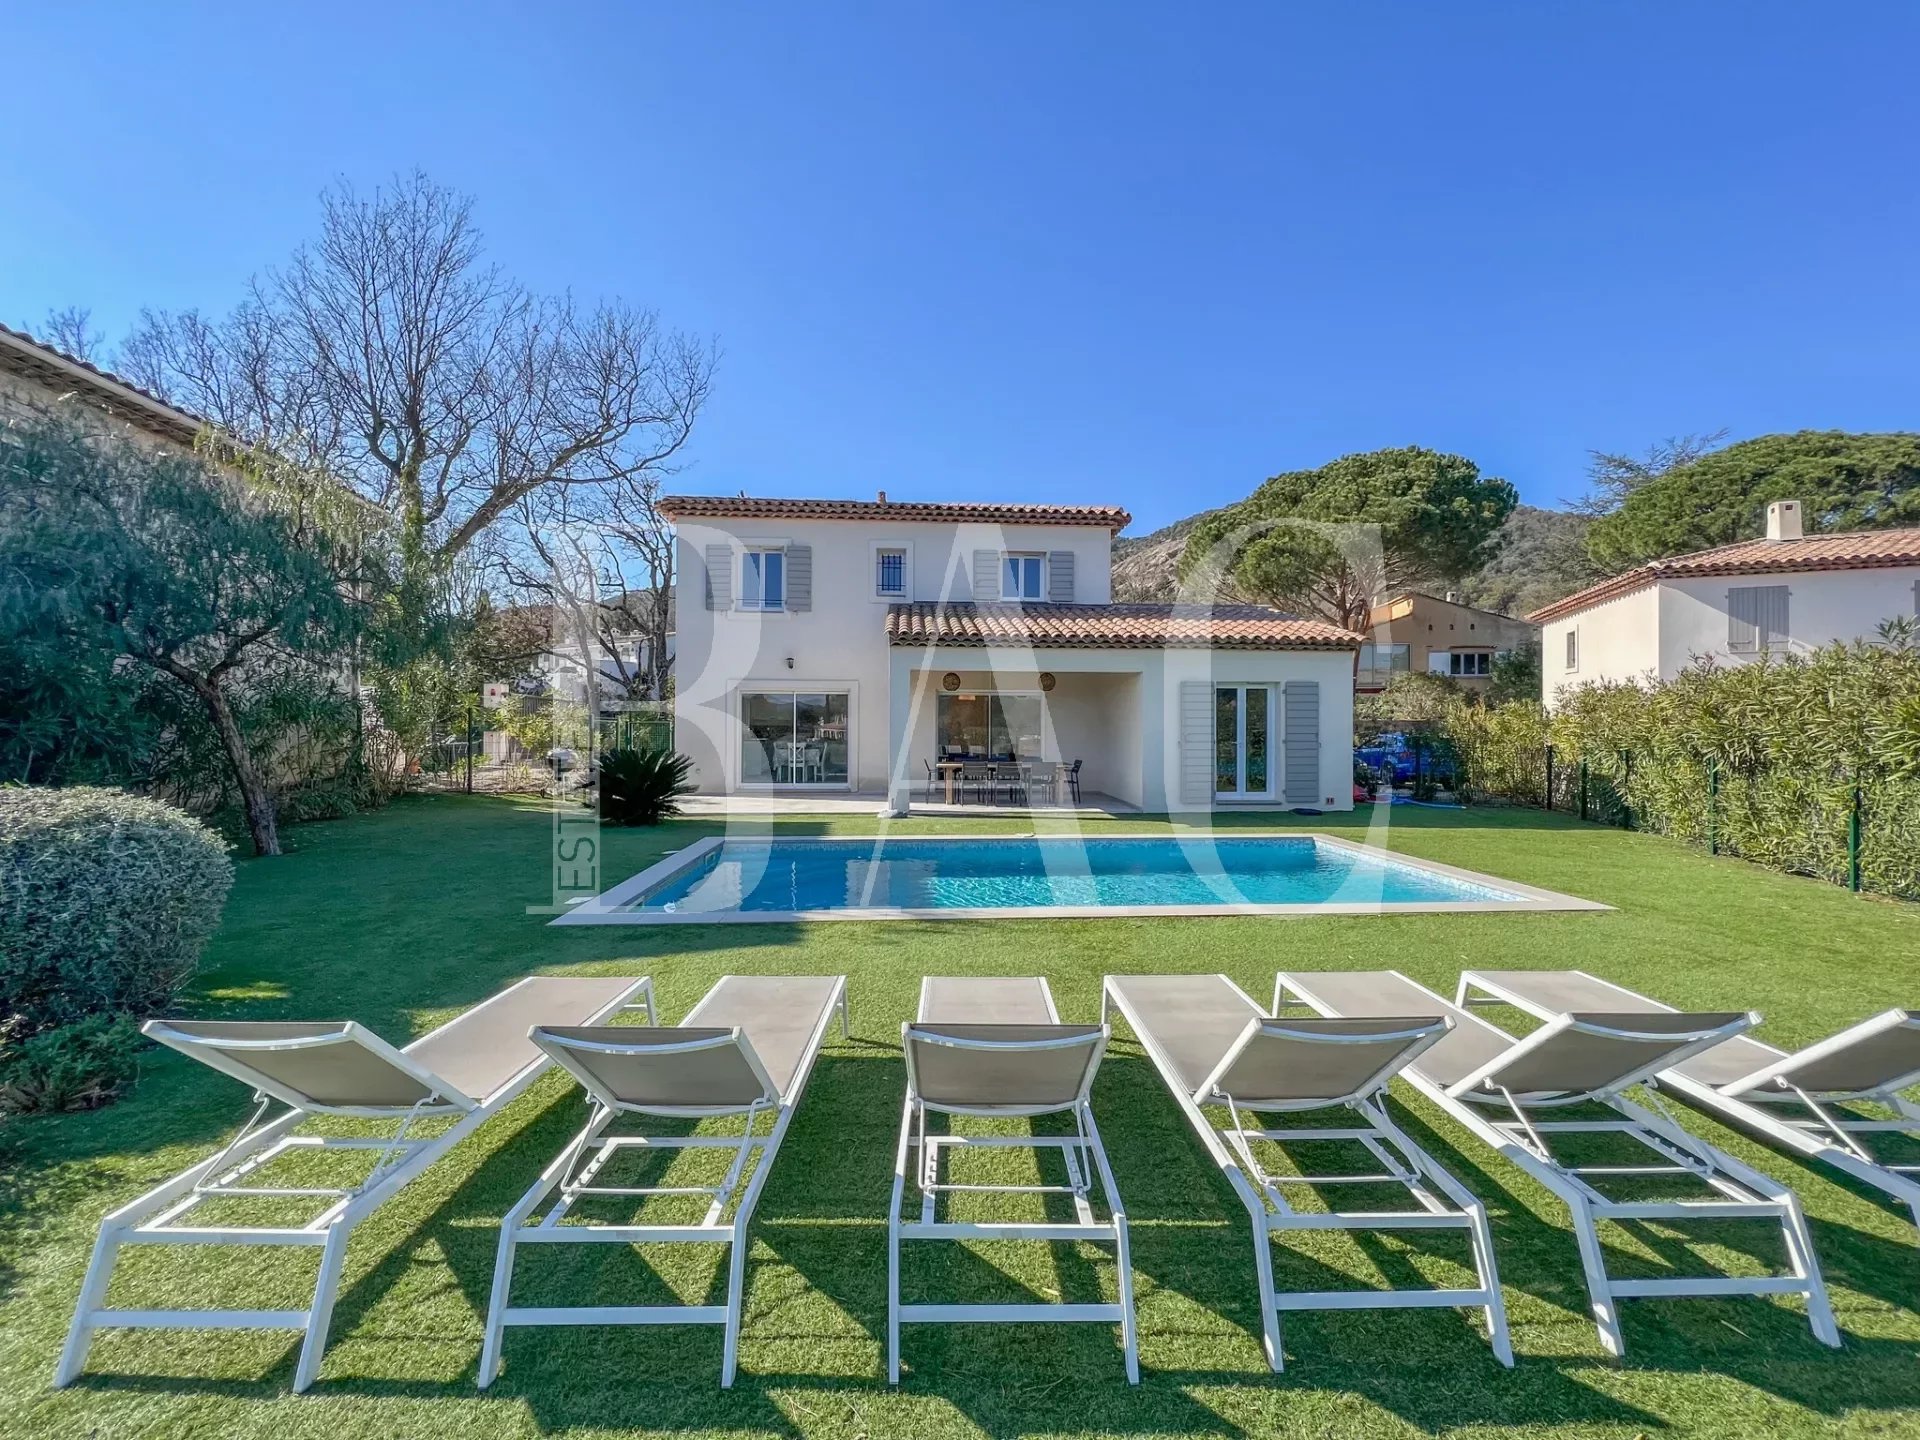 Le-Plan-de-la-Tour, magnifique villa de 2018 située à 15mn de Sainte-Maxime.